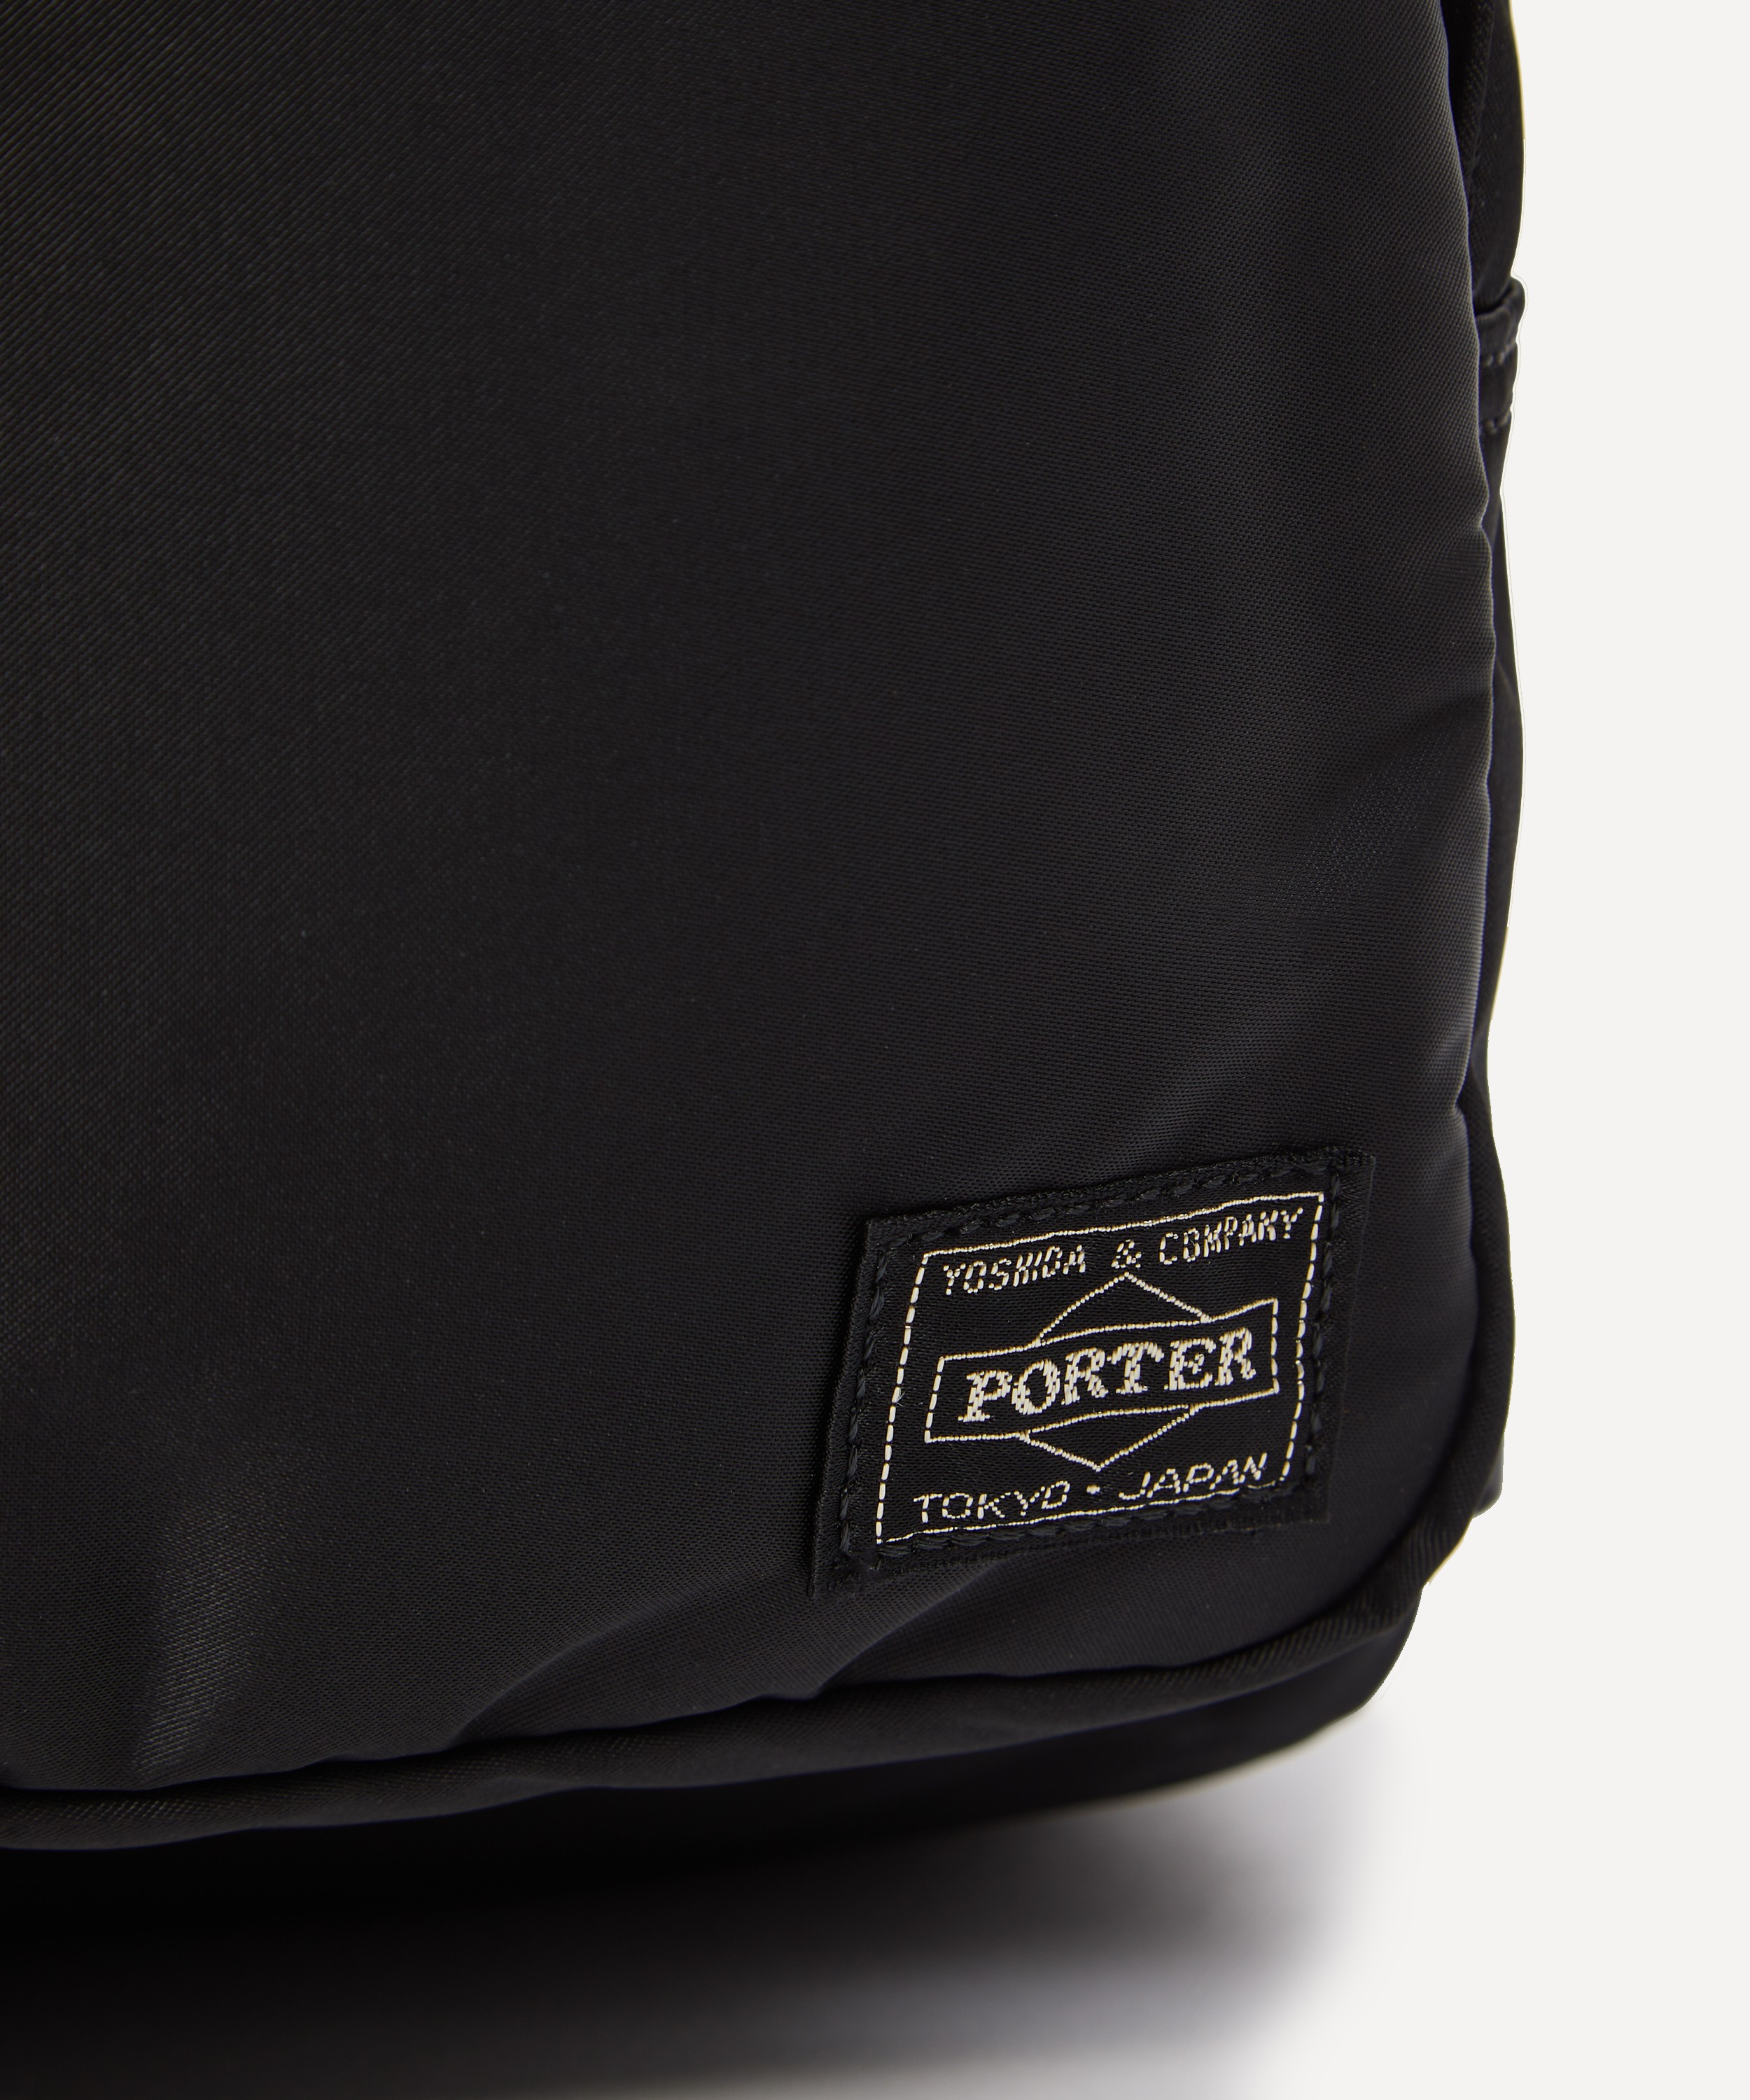 Porter-Yoshida & Co. Tanker Backpack | Liberty